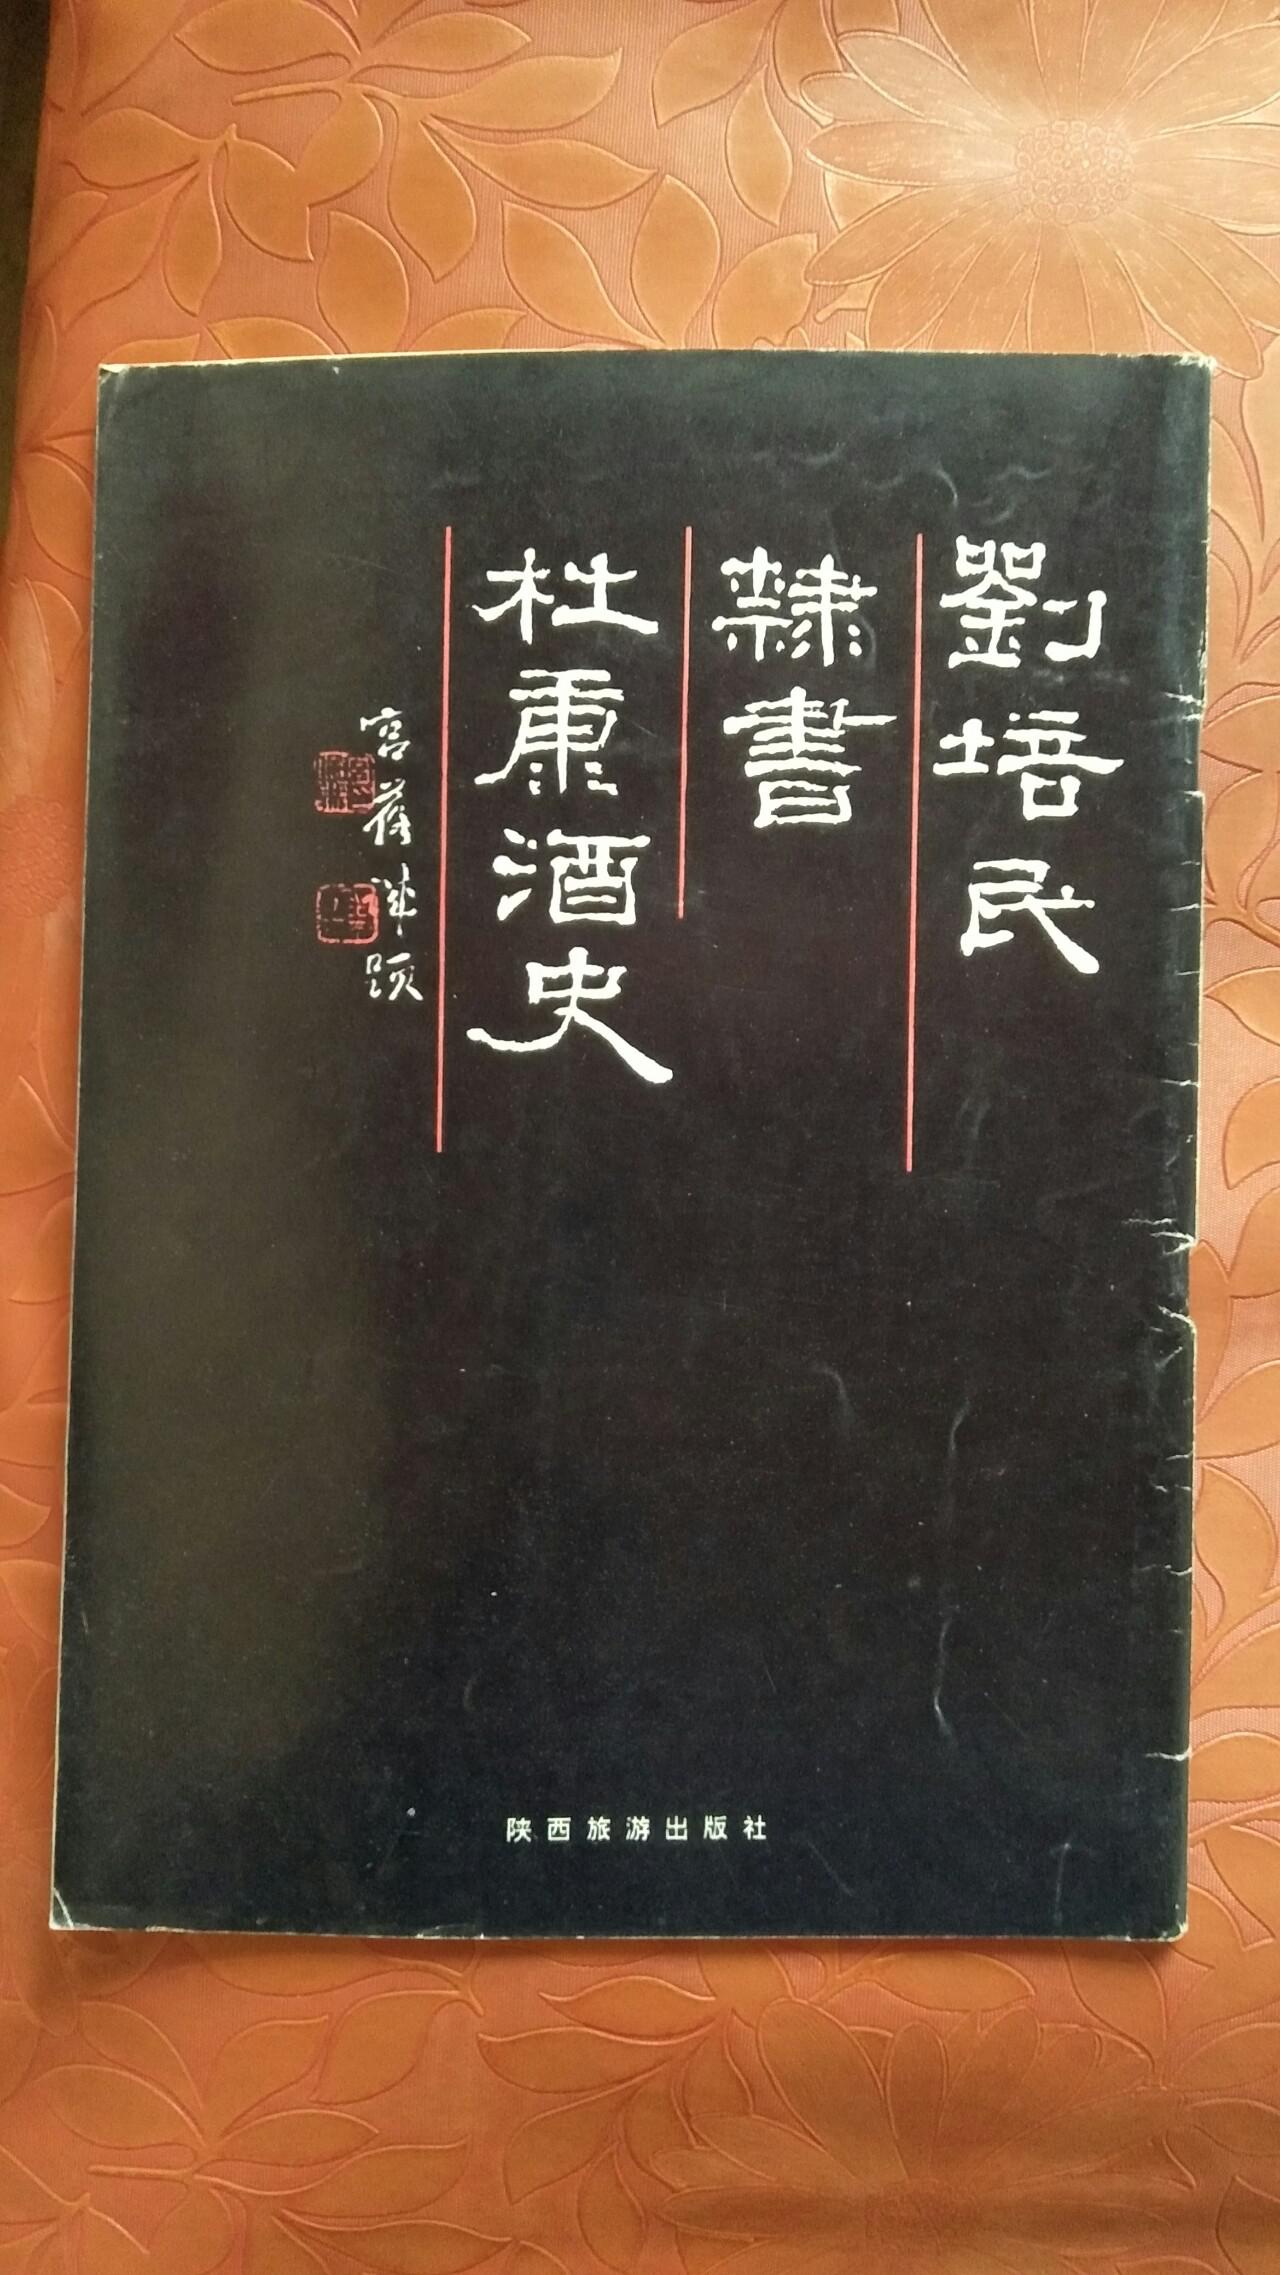 刘培民隶书杜康酒史(刘培民毛笔签名钤印)